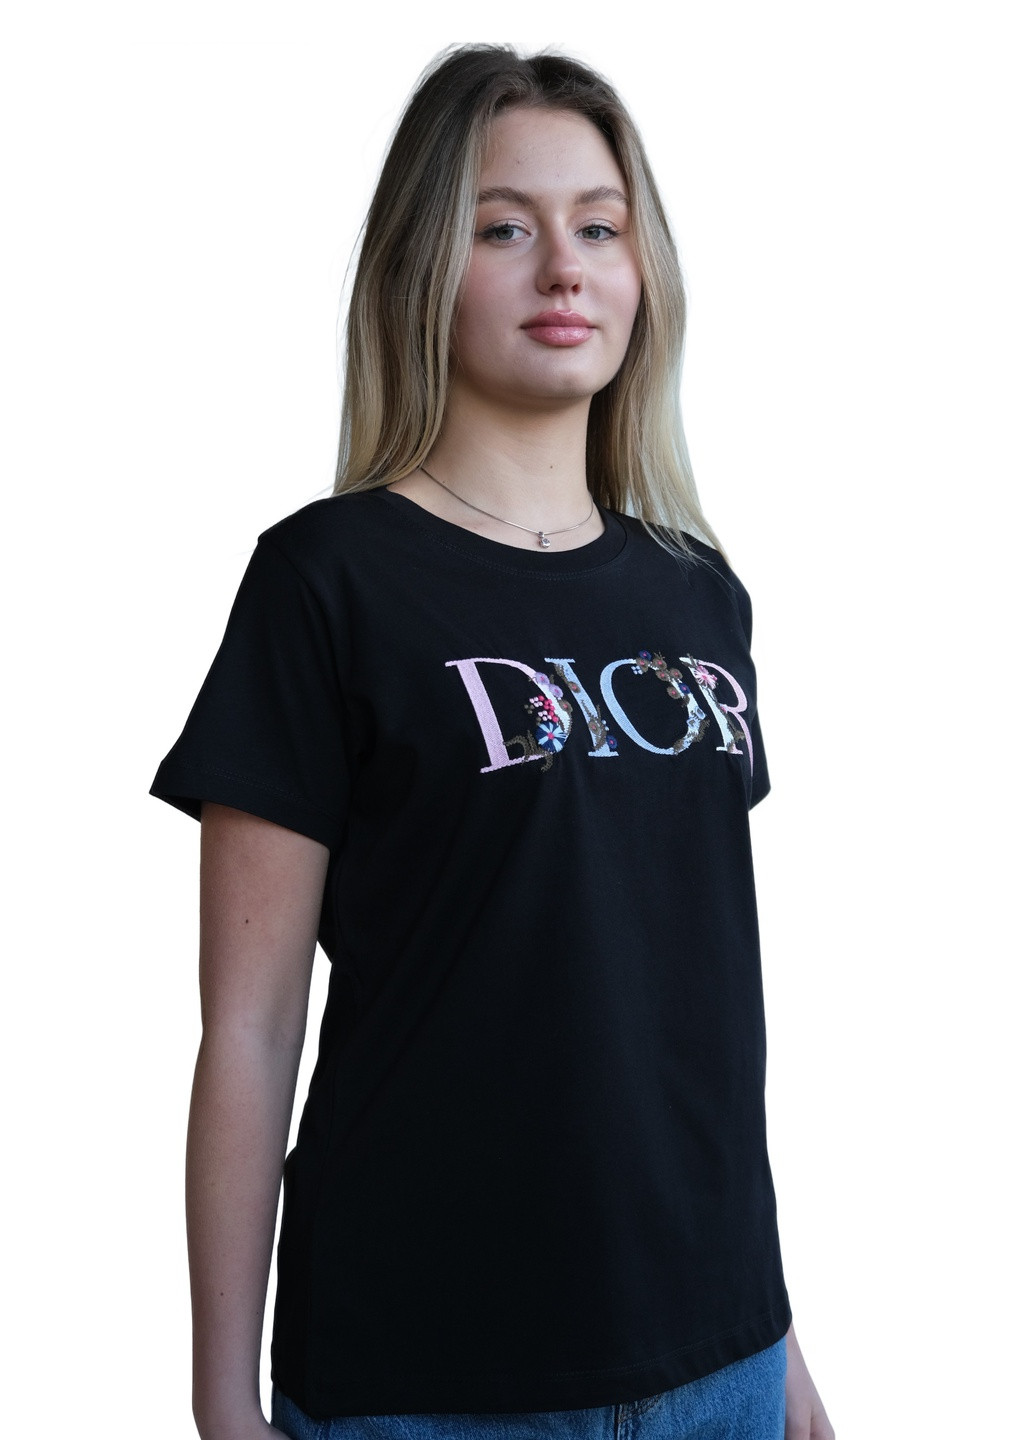 Черная летняя футболка женская cristian Dior